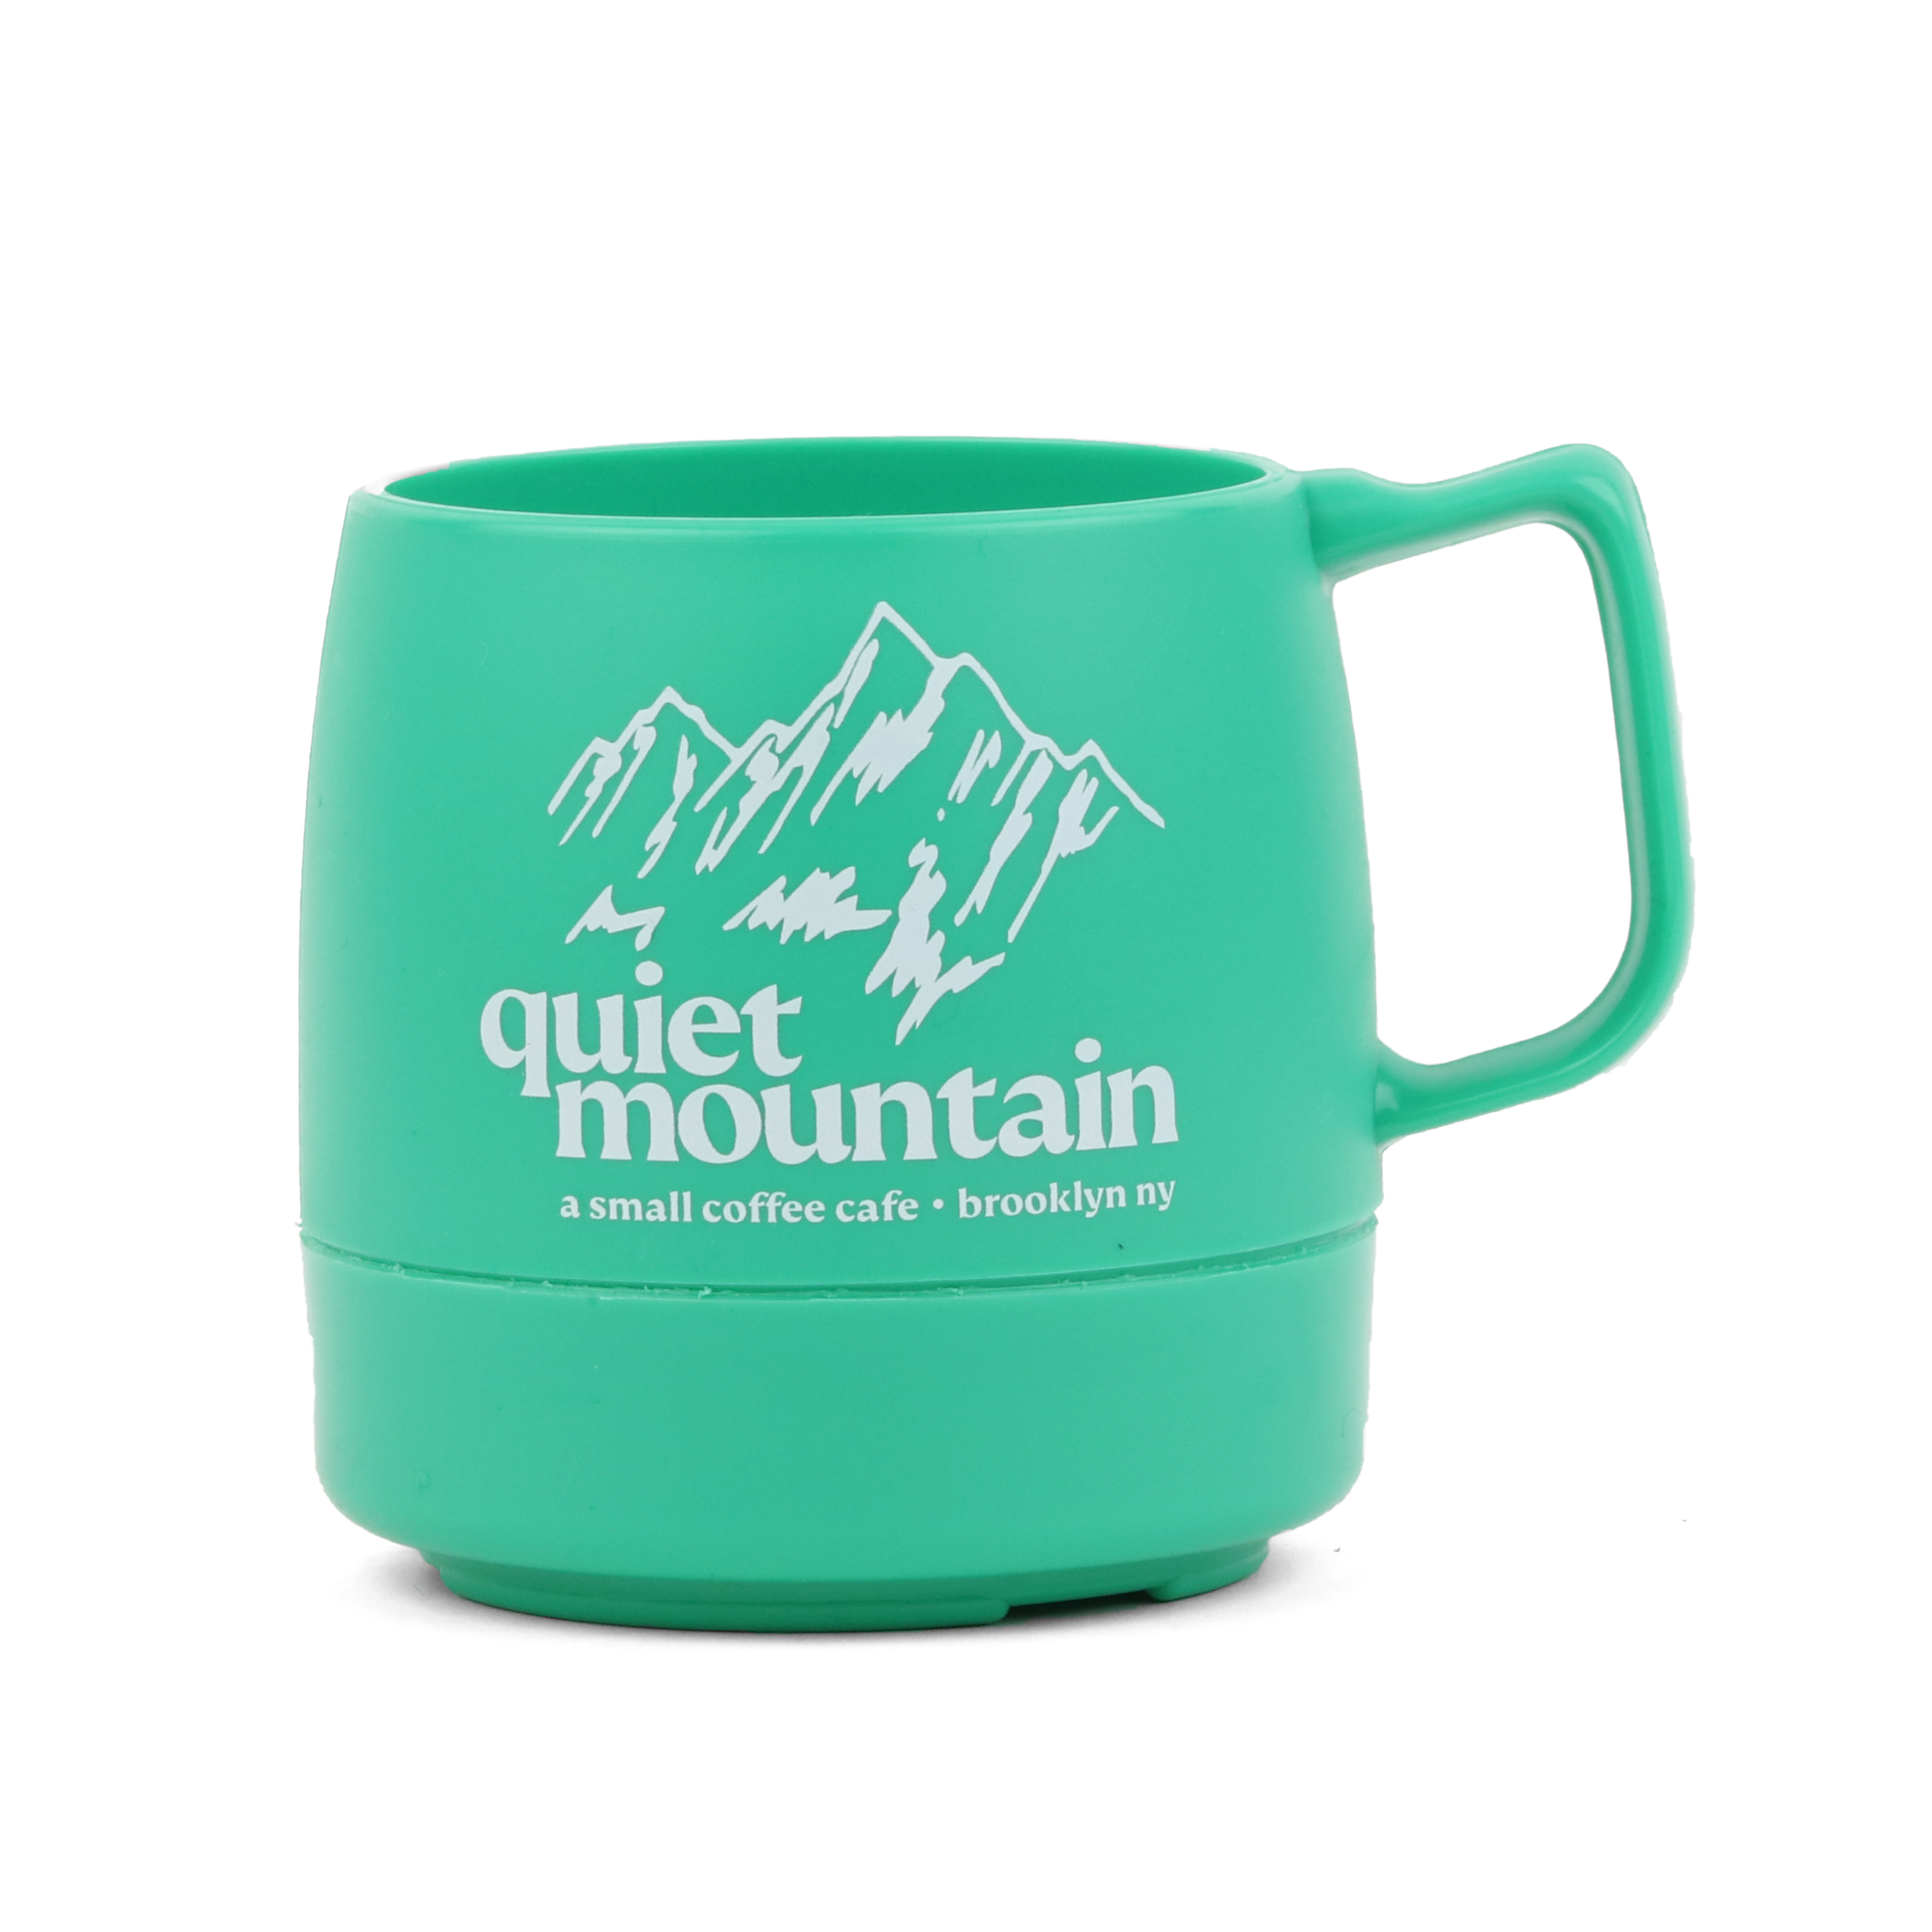 quiet mountain cafe cafe mug カフェ マグryomiyoshi - 食器